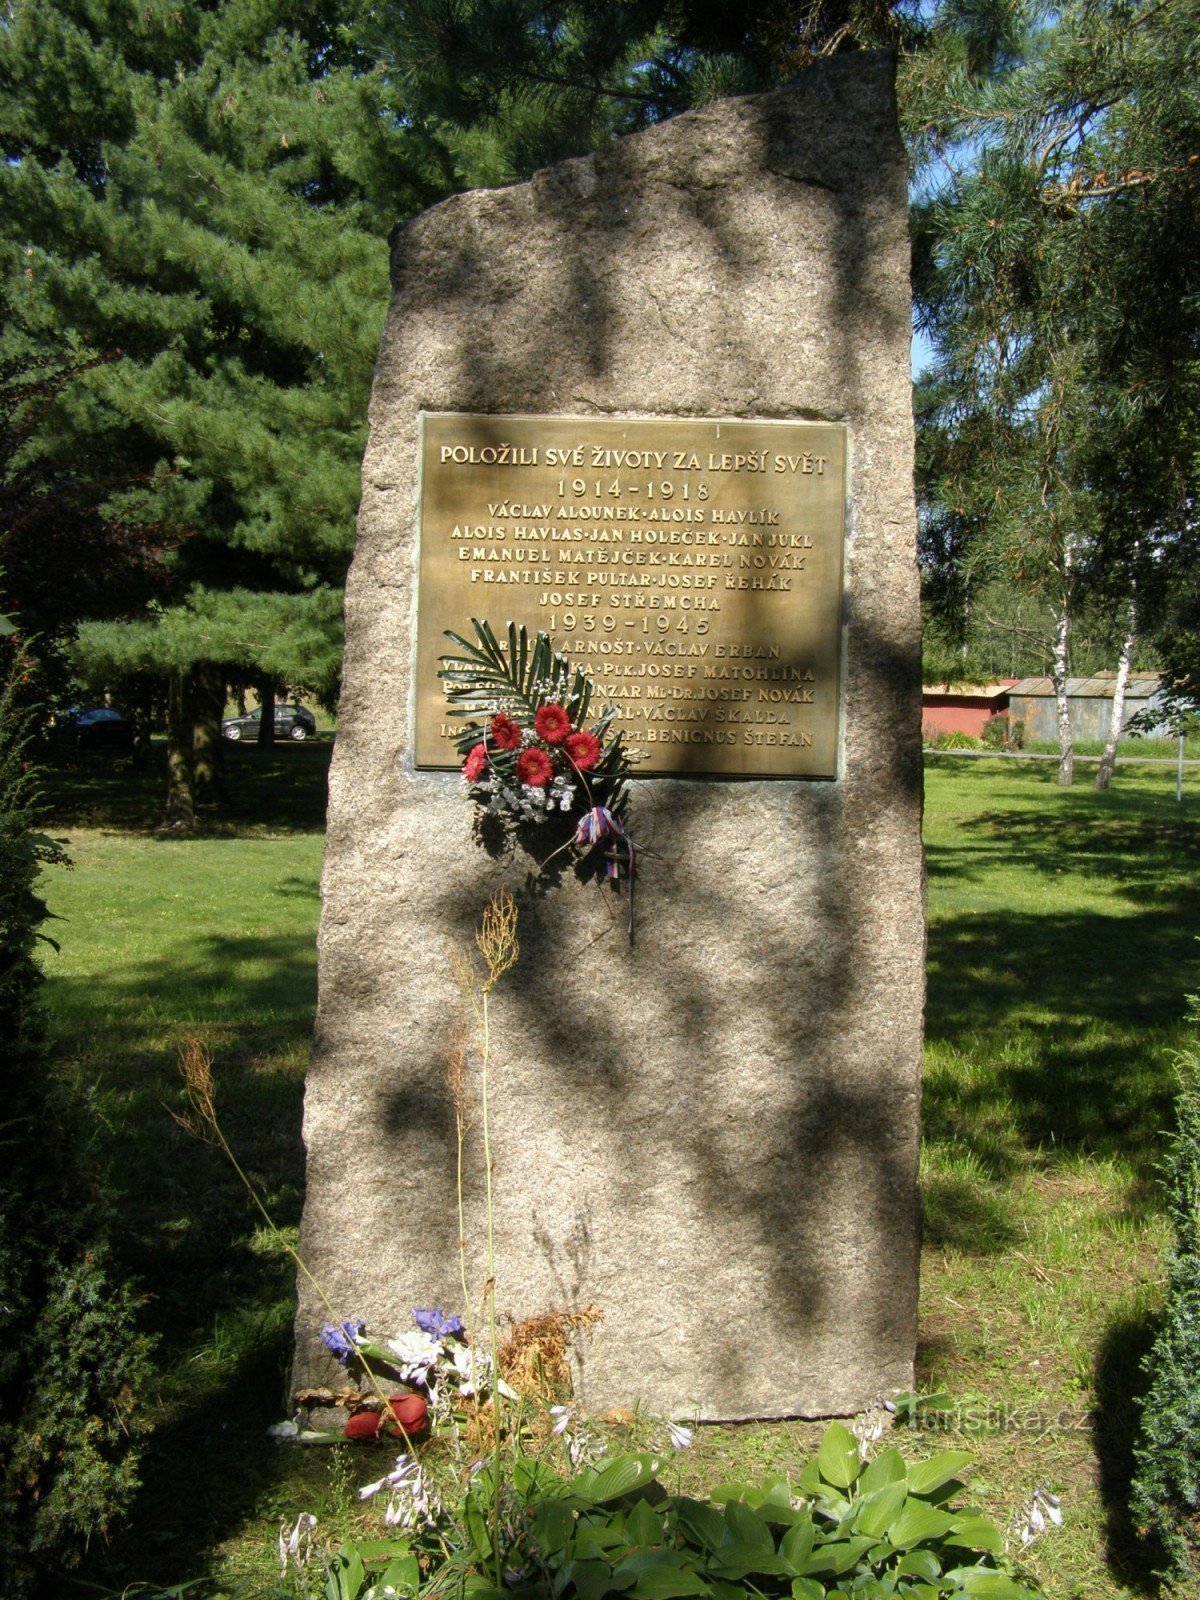 Градец Кралове - пам'ятник жертвам війни в передмісті Сілезії